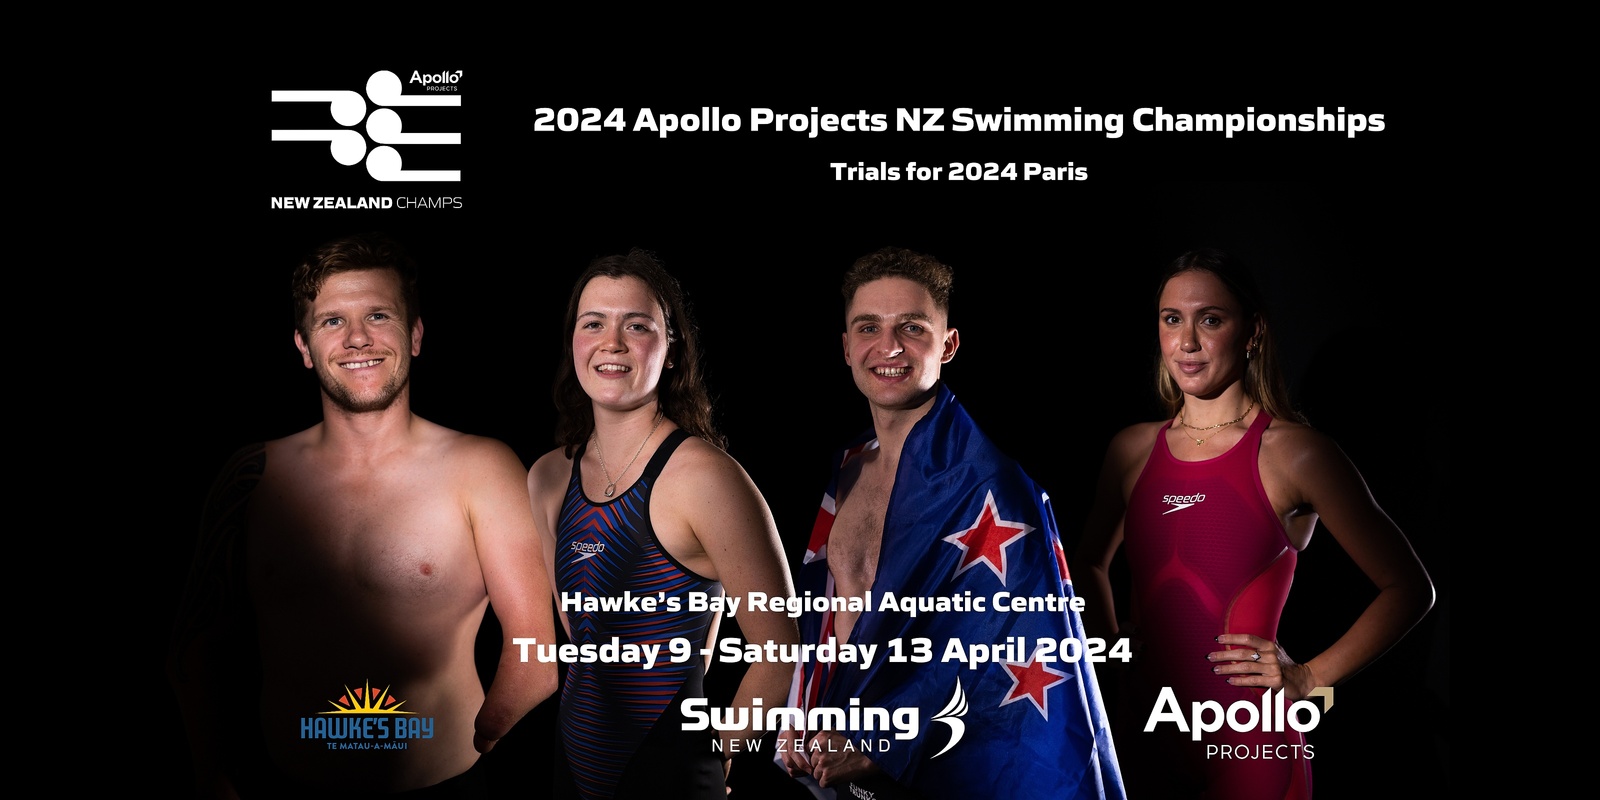 Swim T3 Swim 4 Plunket - Auckland - Eventfinda